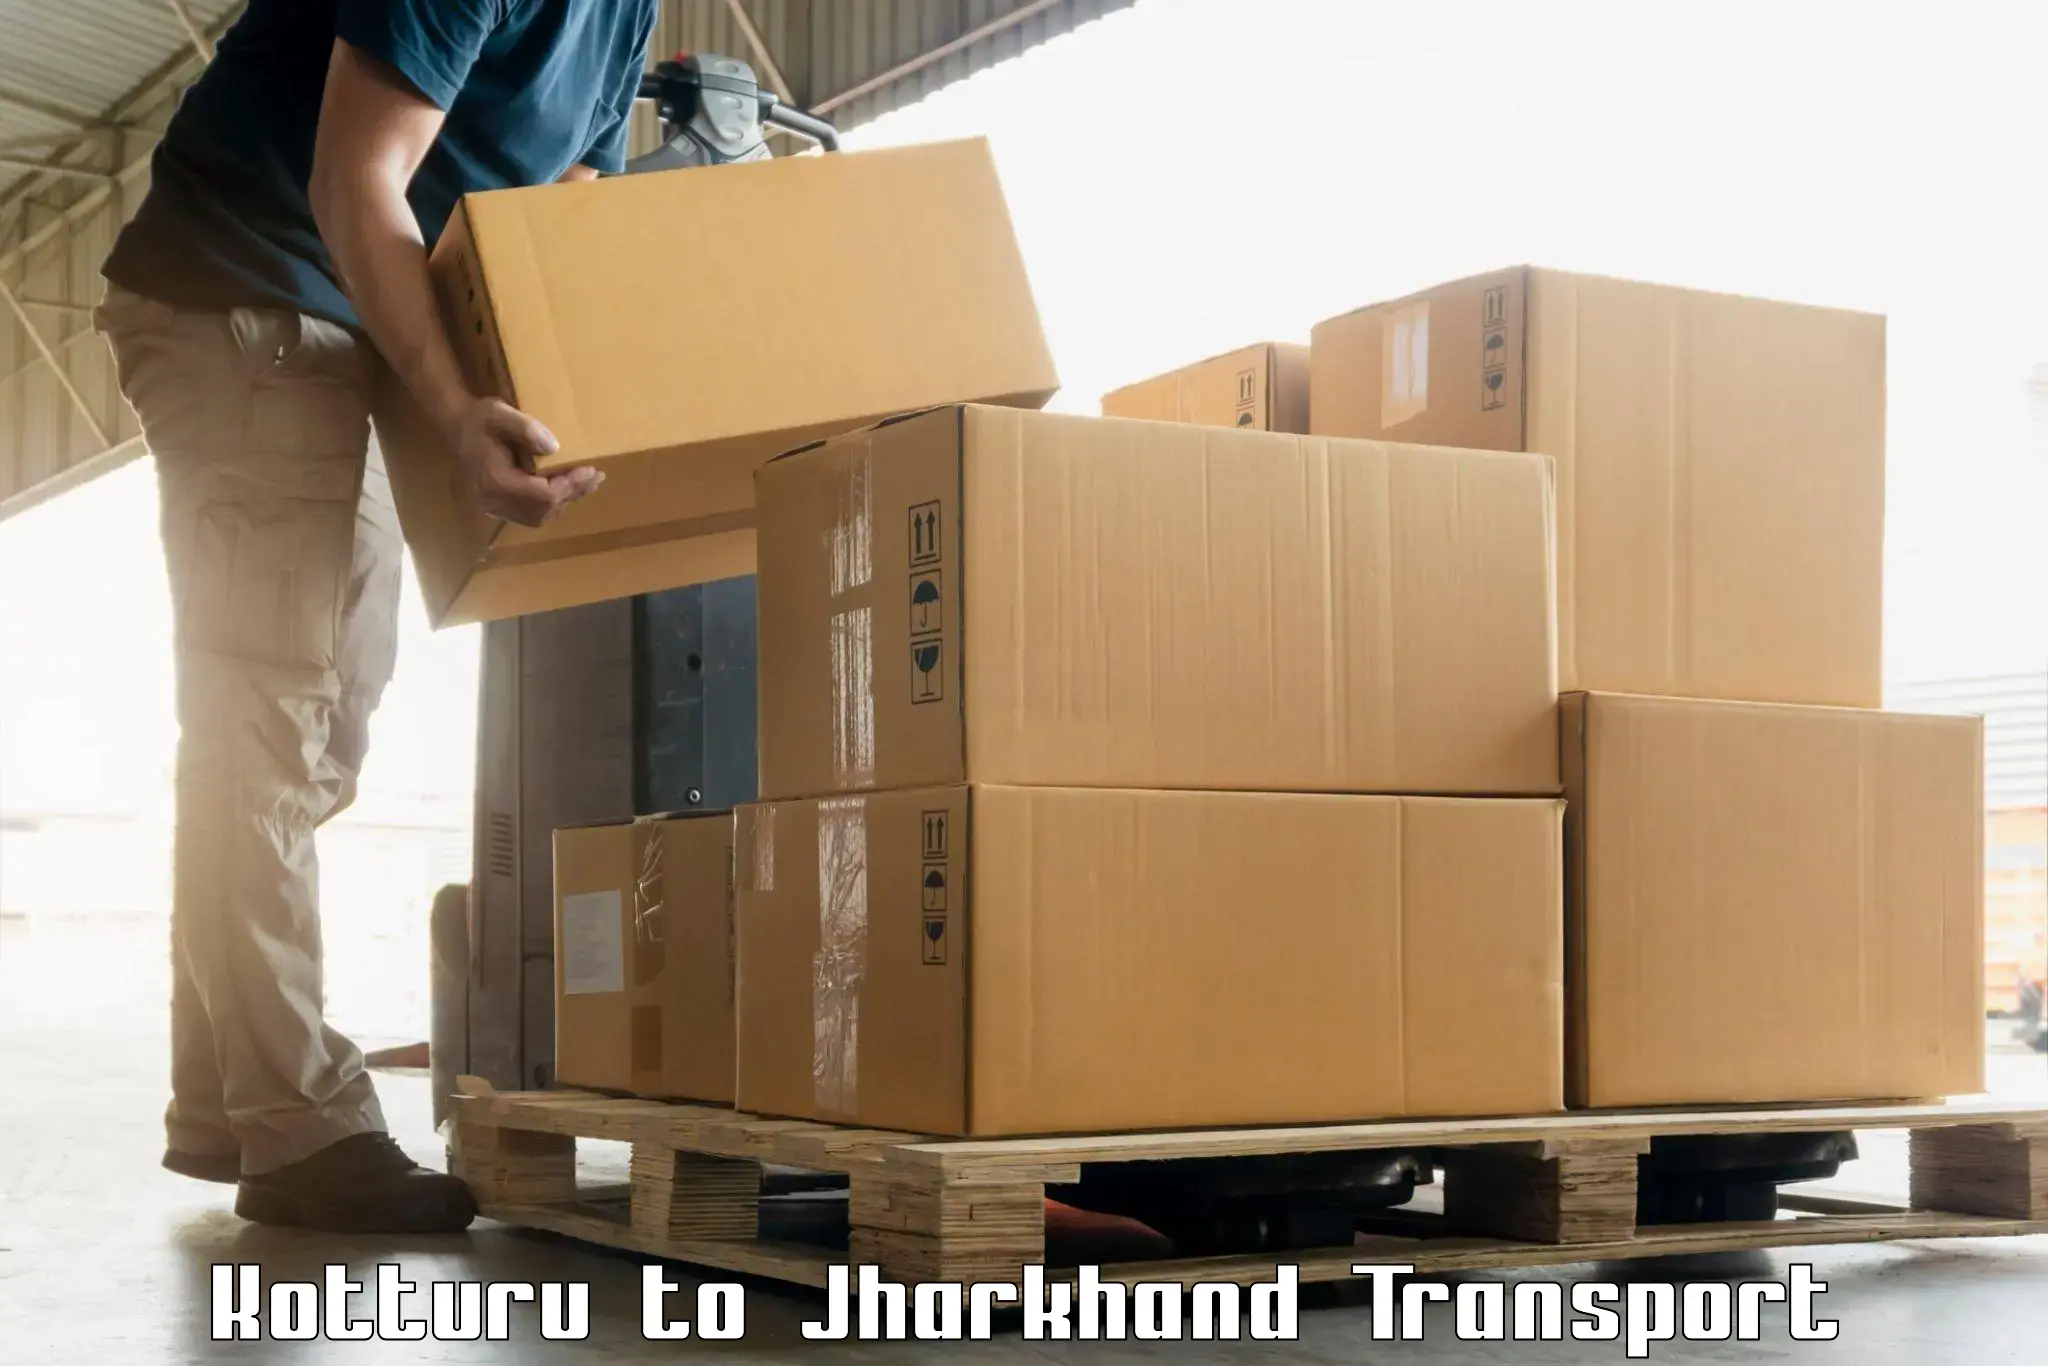 Part load transport service in India Kotturu to Medininagar